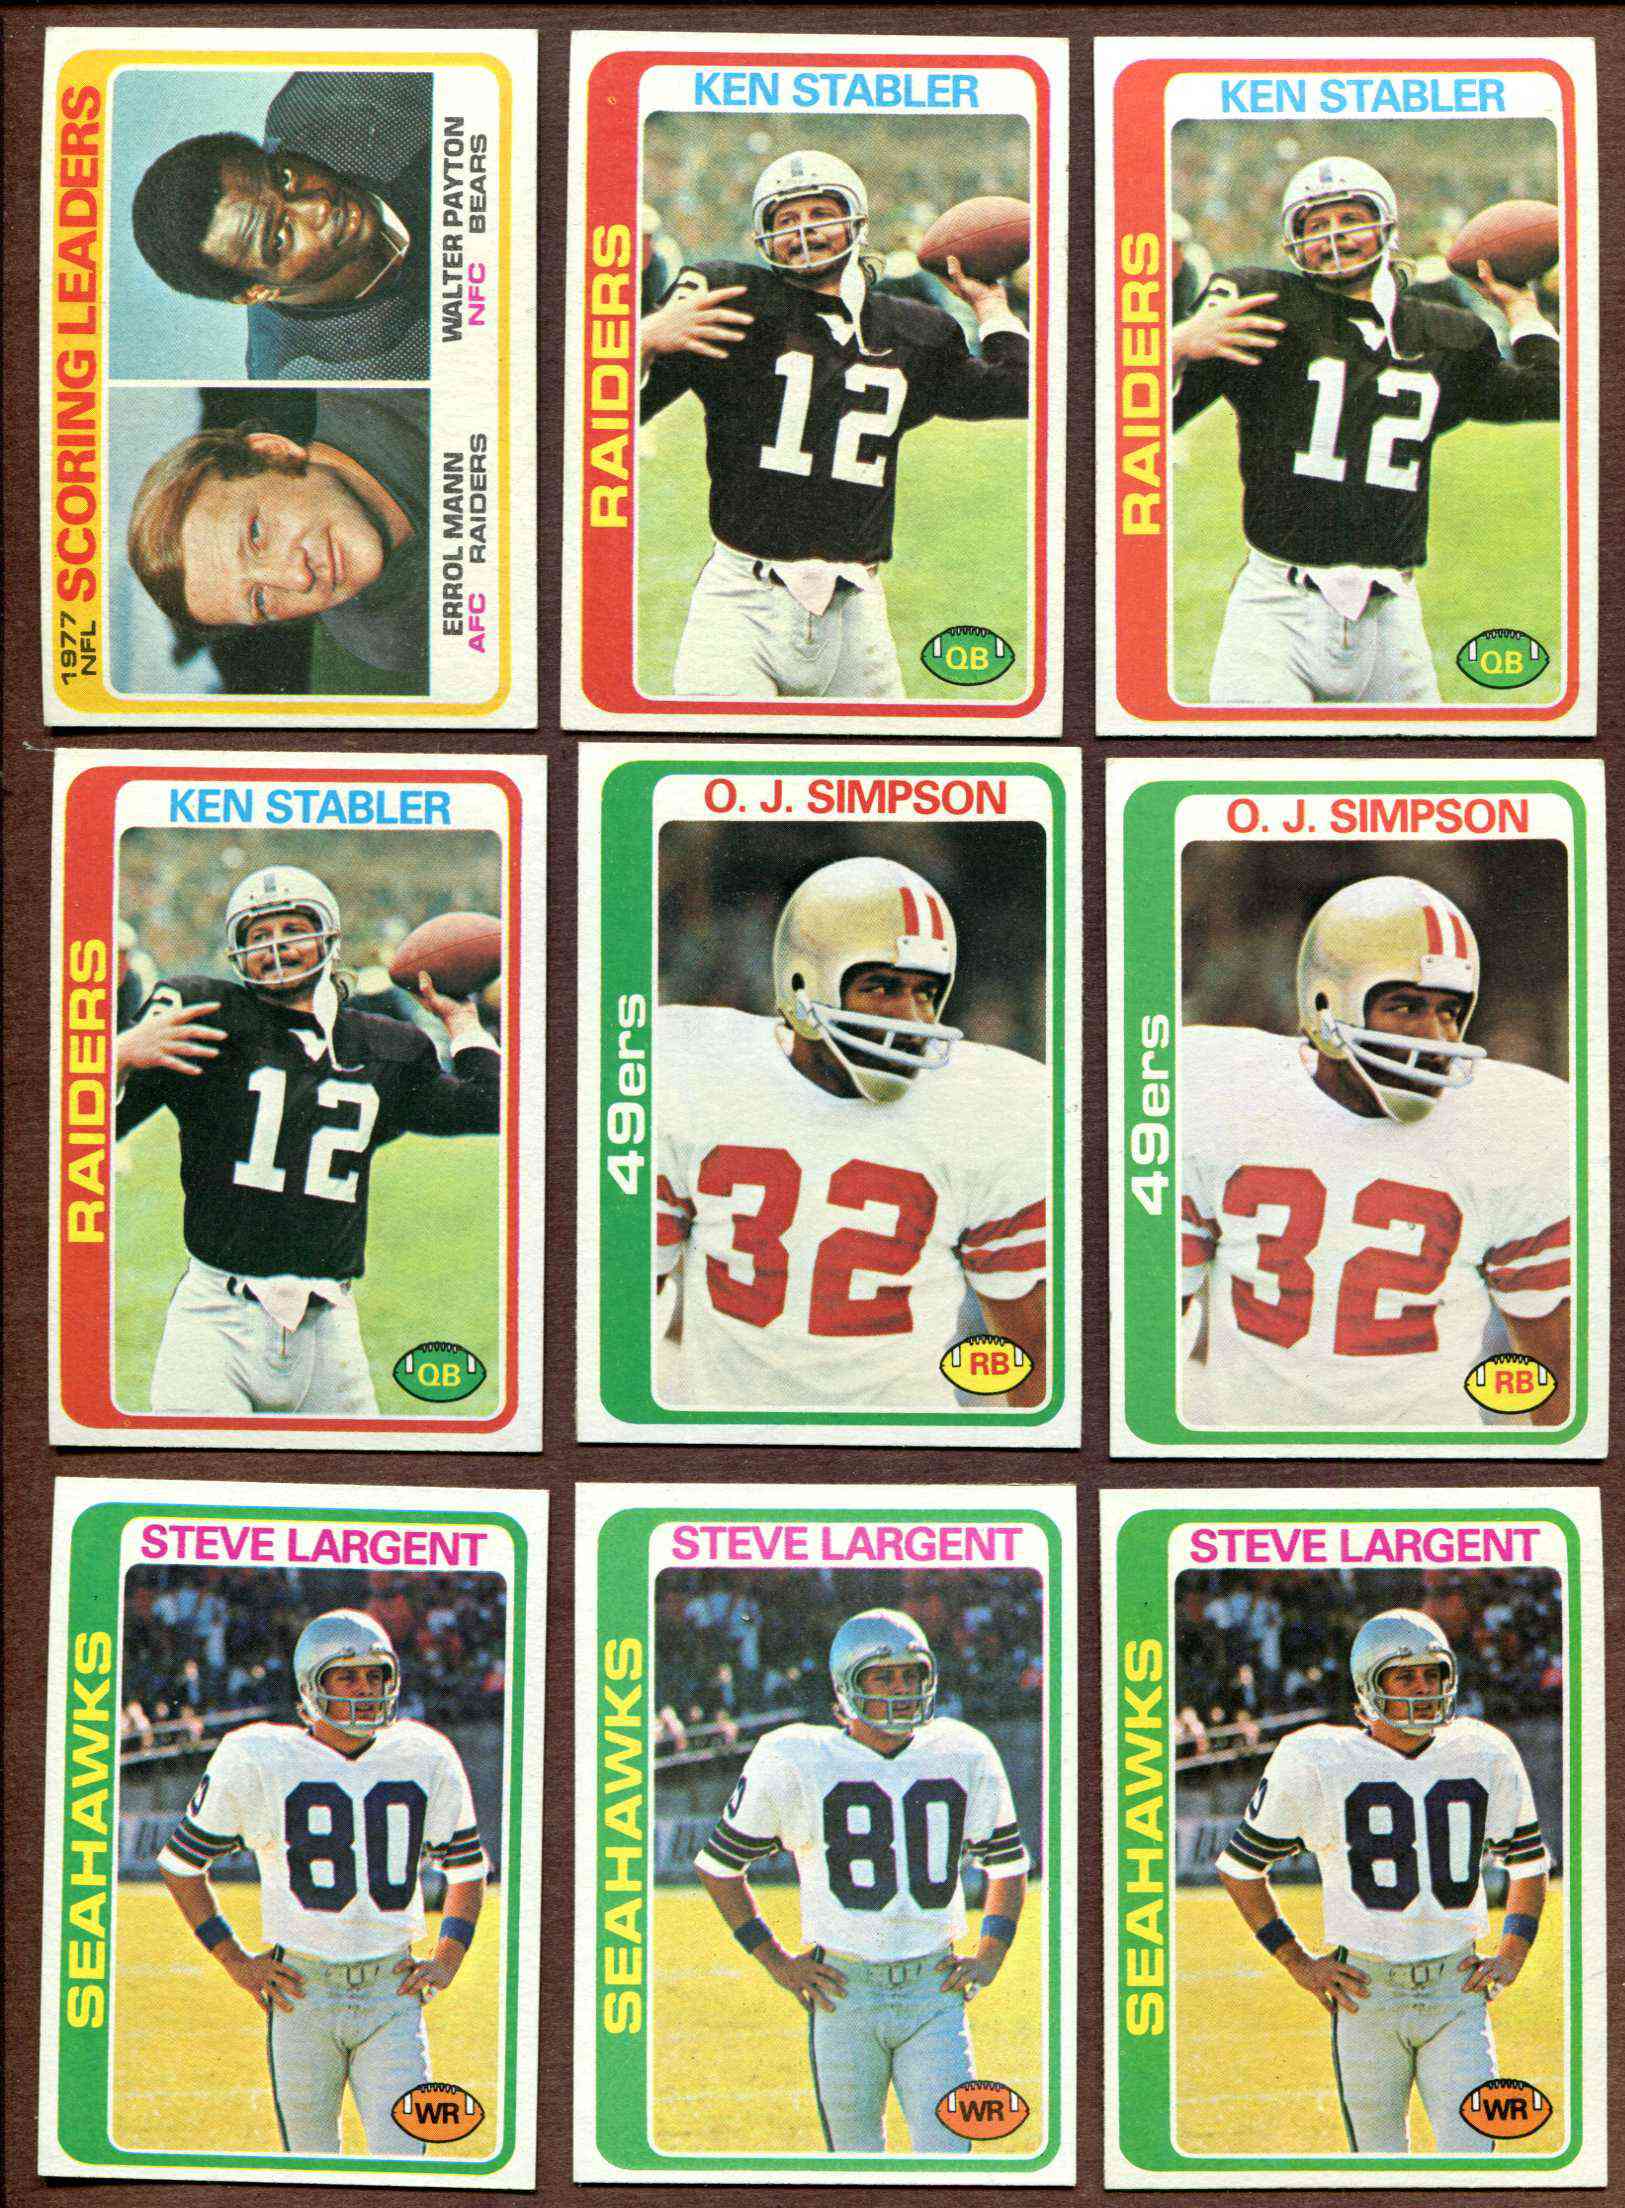 1978 Topps FB #365 Ken Stabler (Raiders) Football cards value